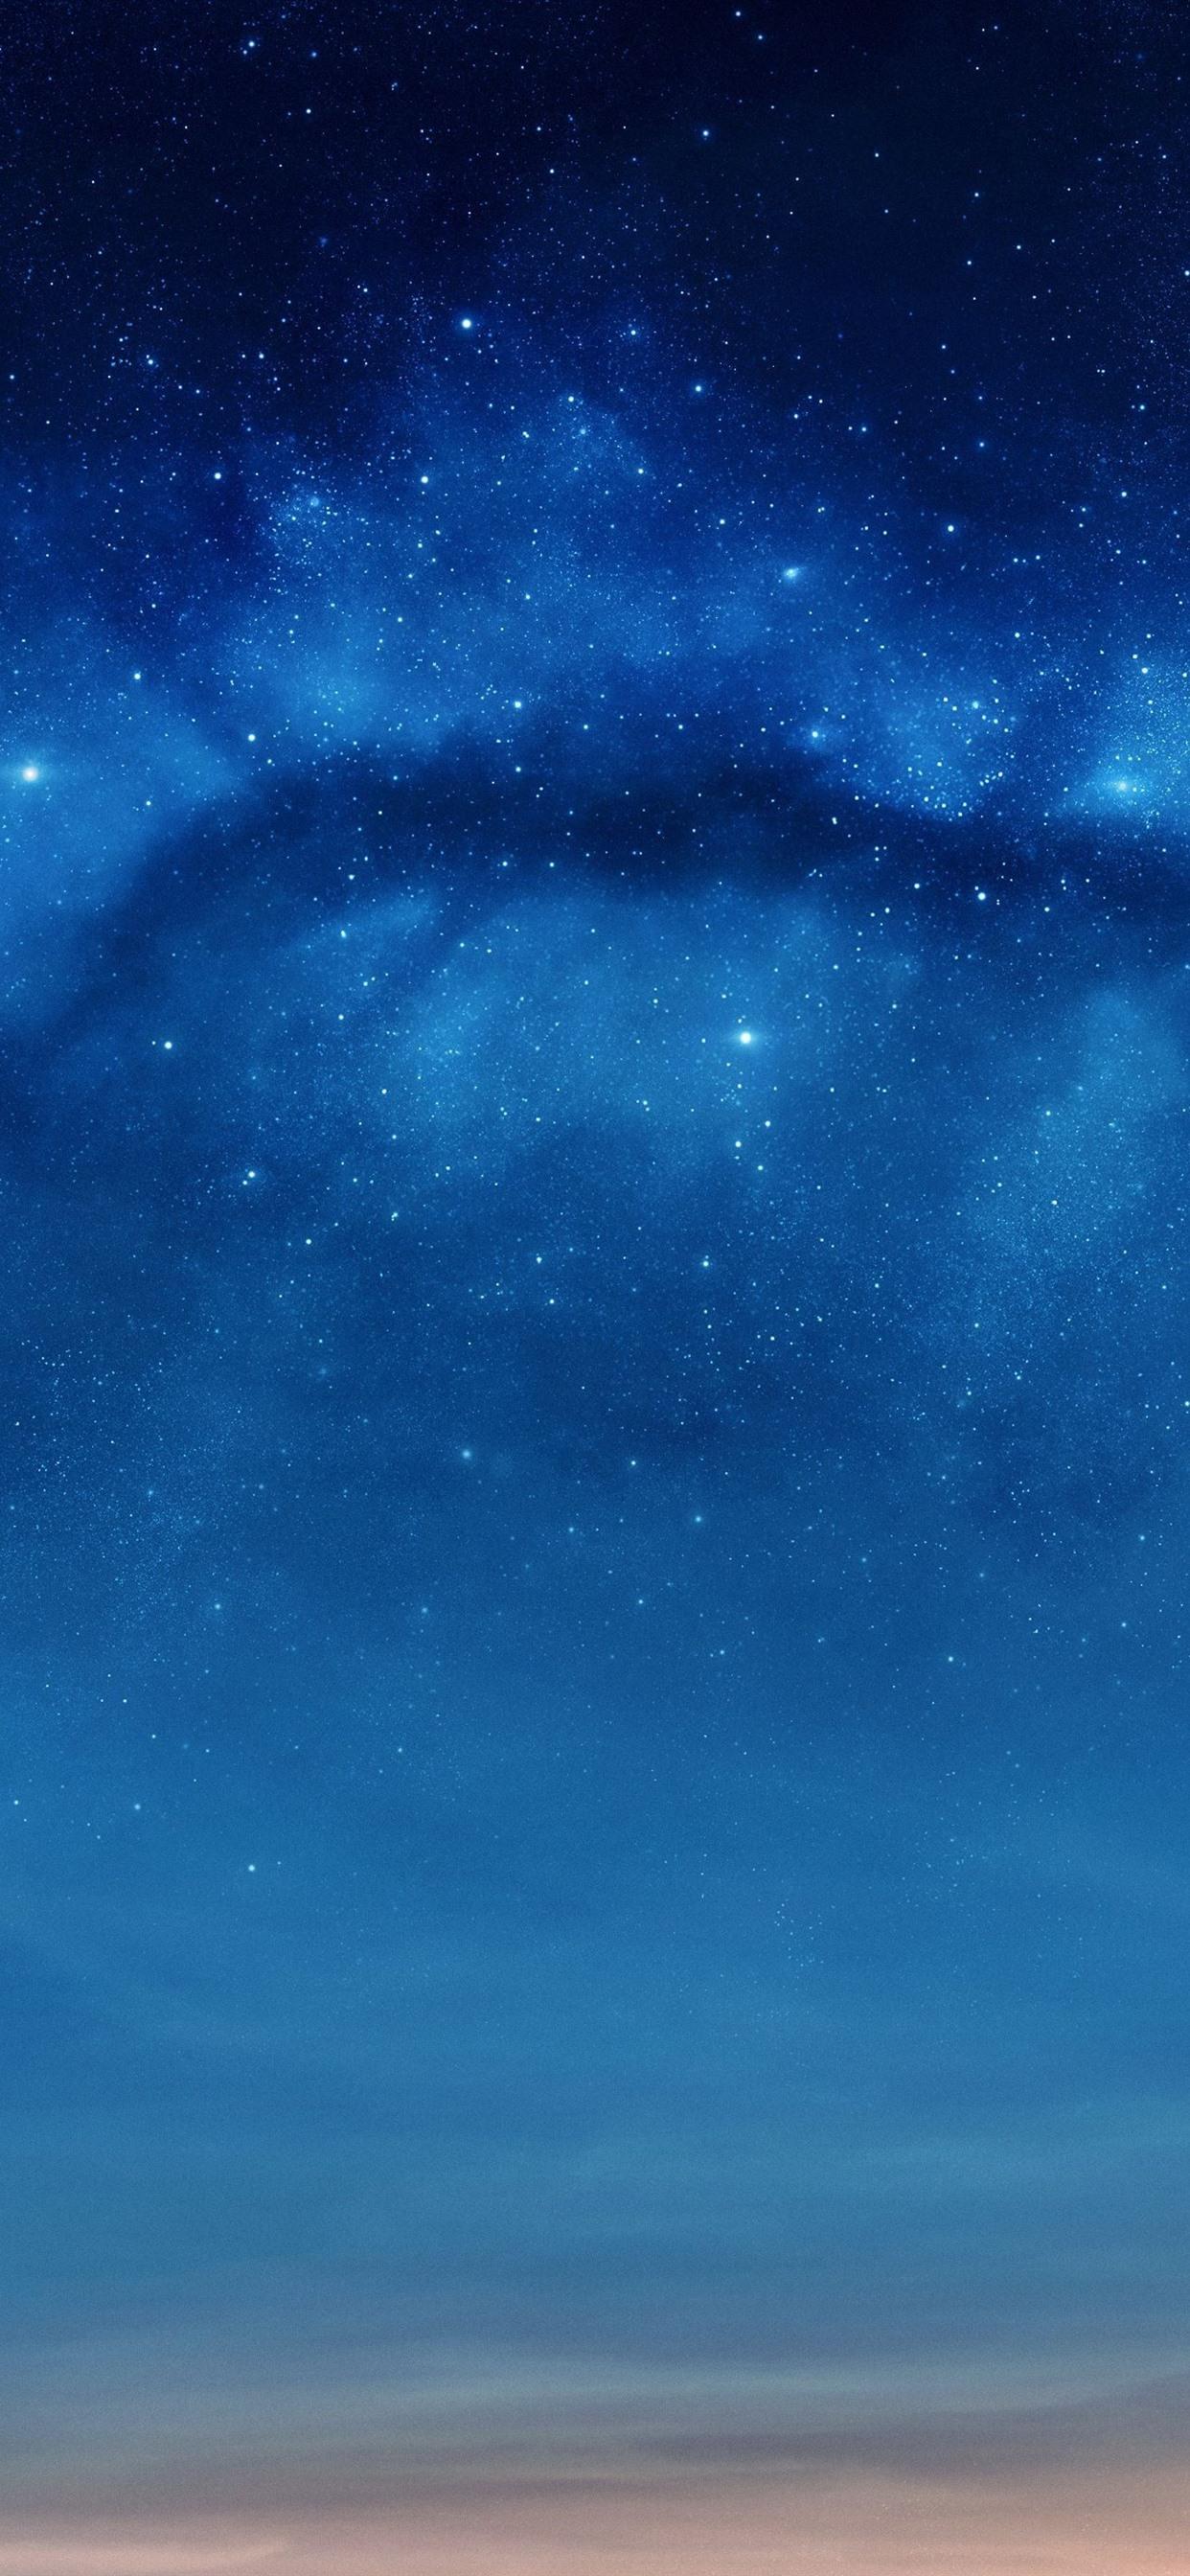 Stars, blue sky, night 1242x2688 iPhone XS Max wallpaper